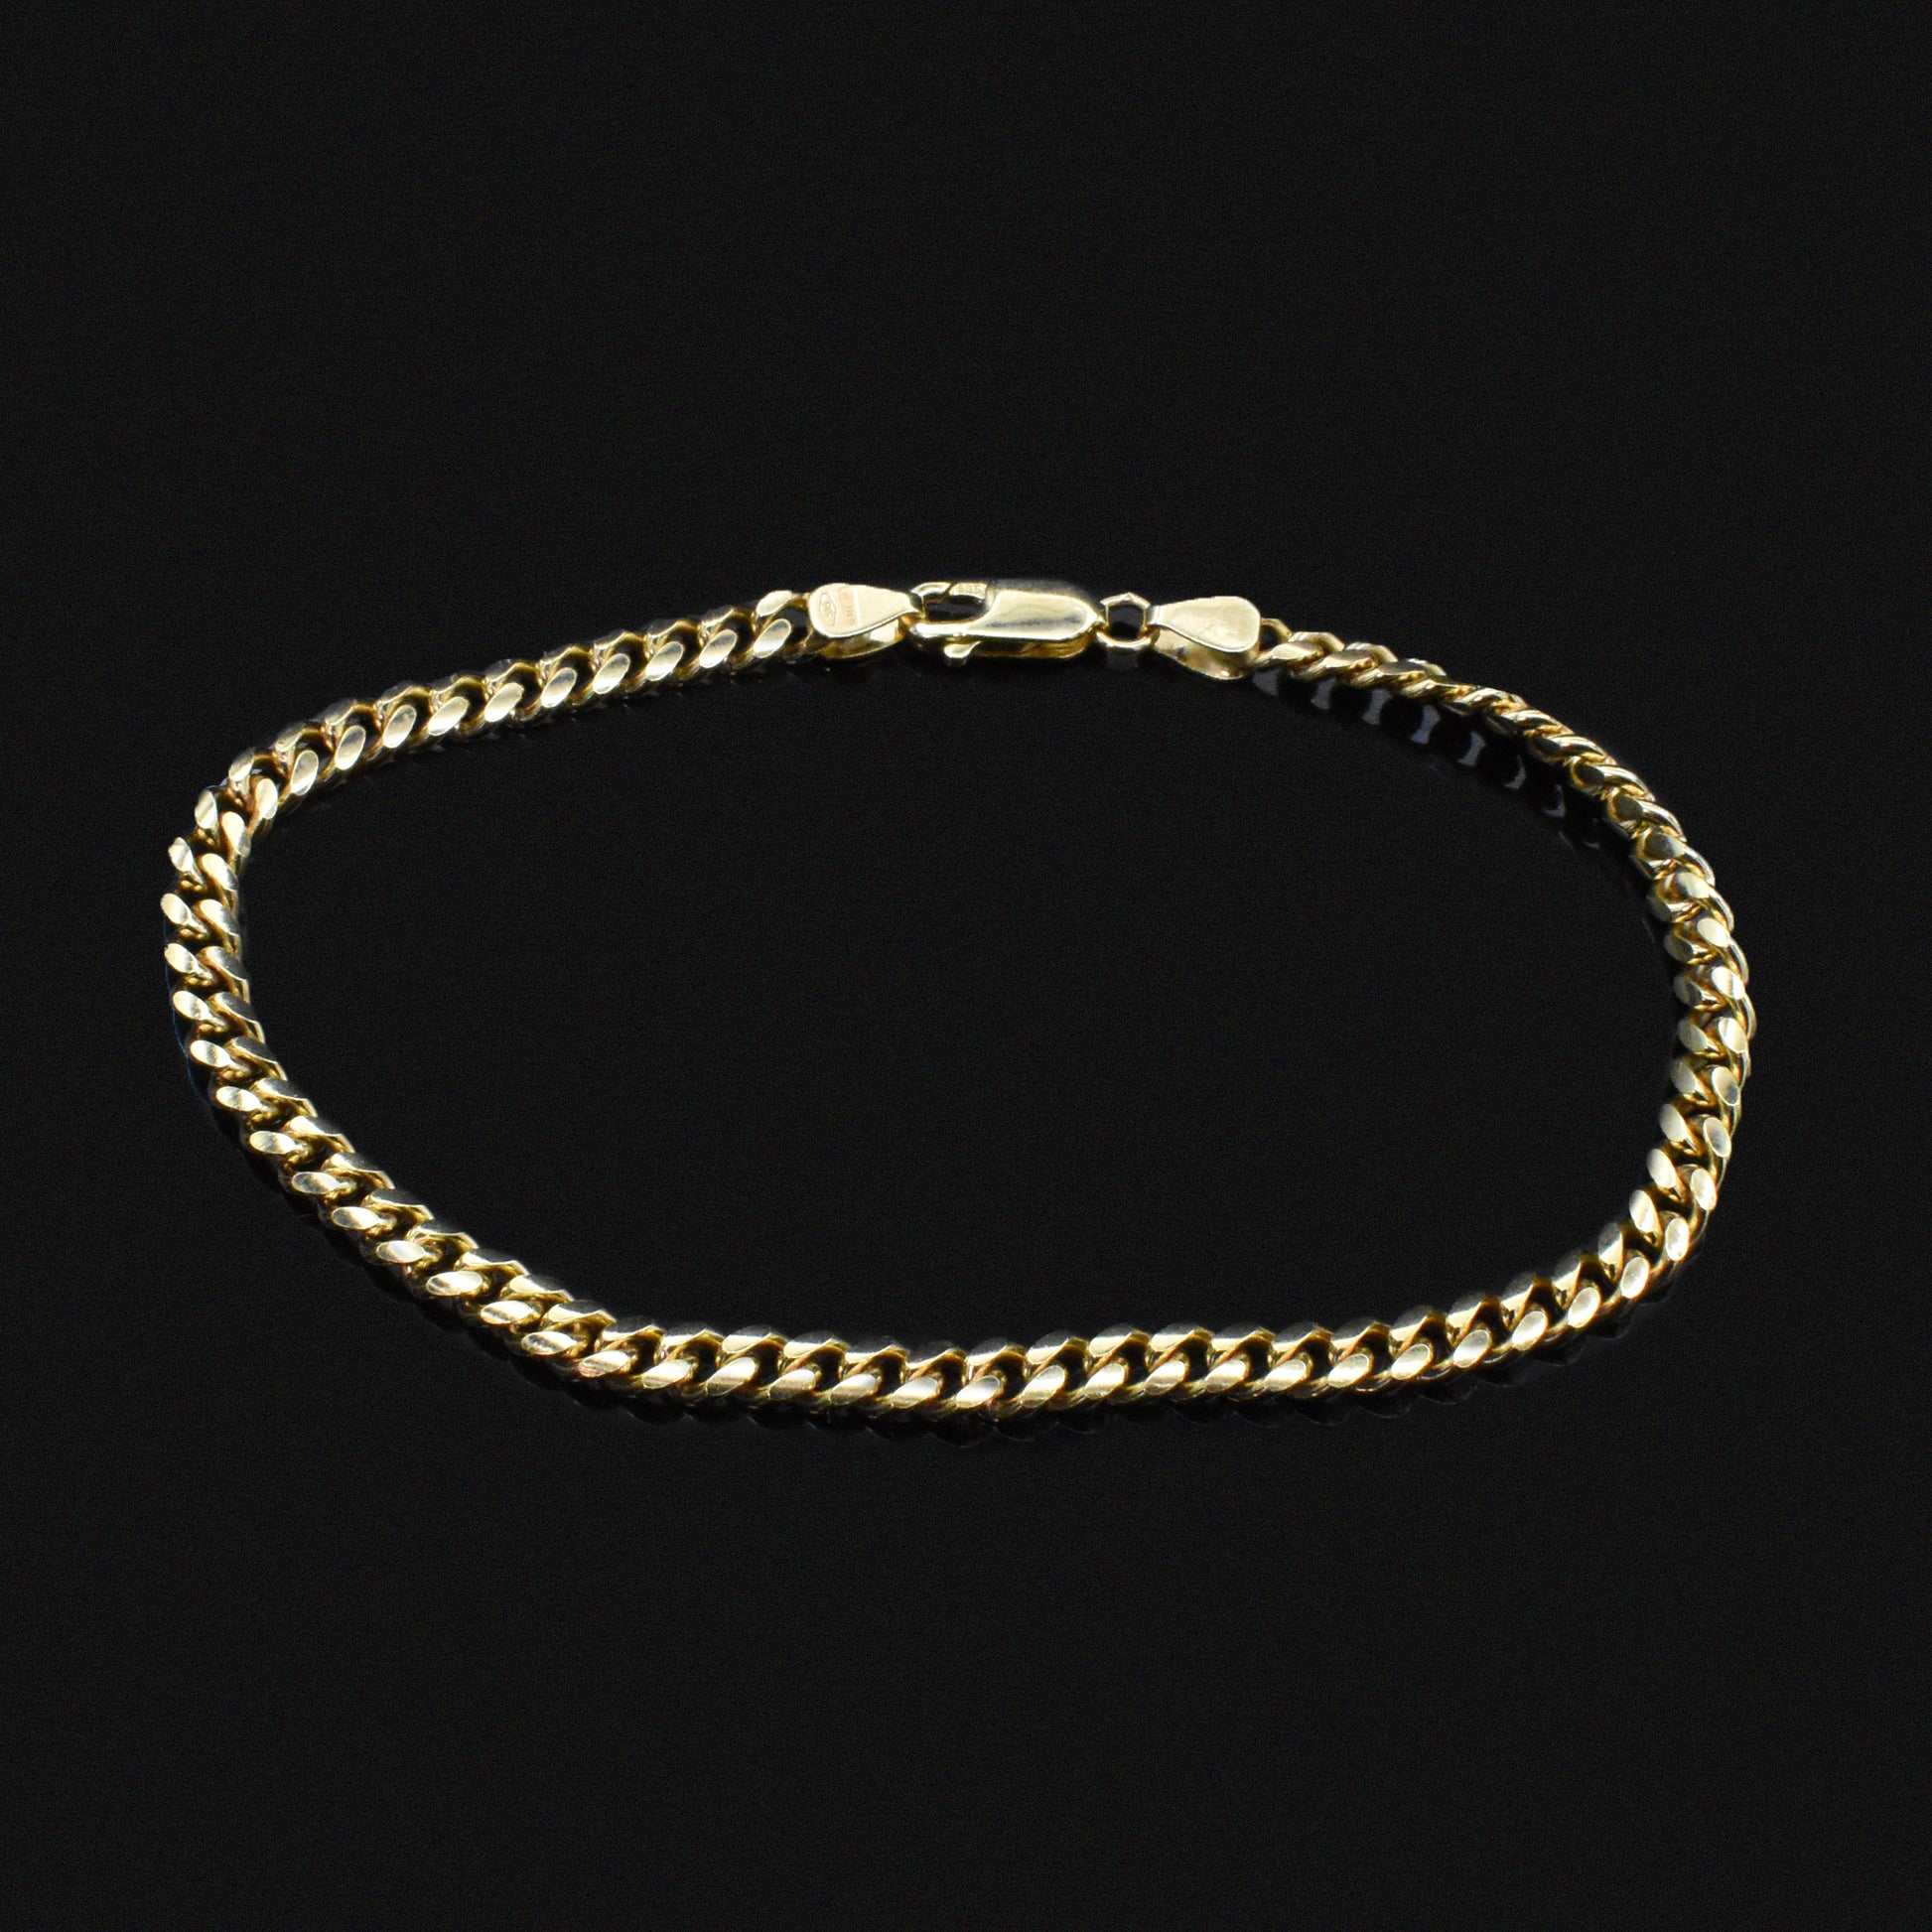 cuban chain bracelet unisex yellow gold for him men